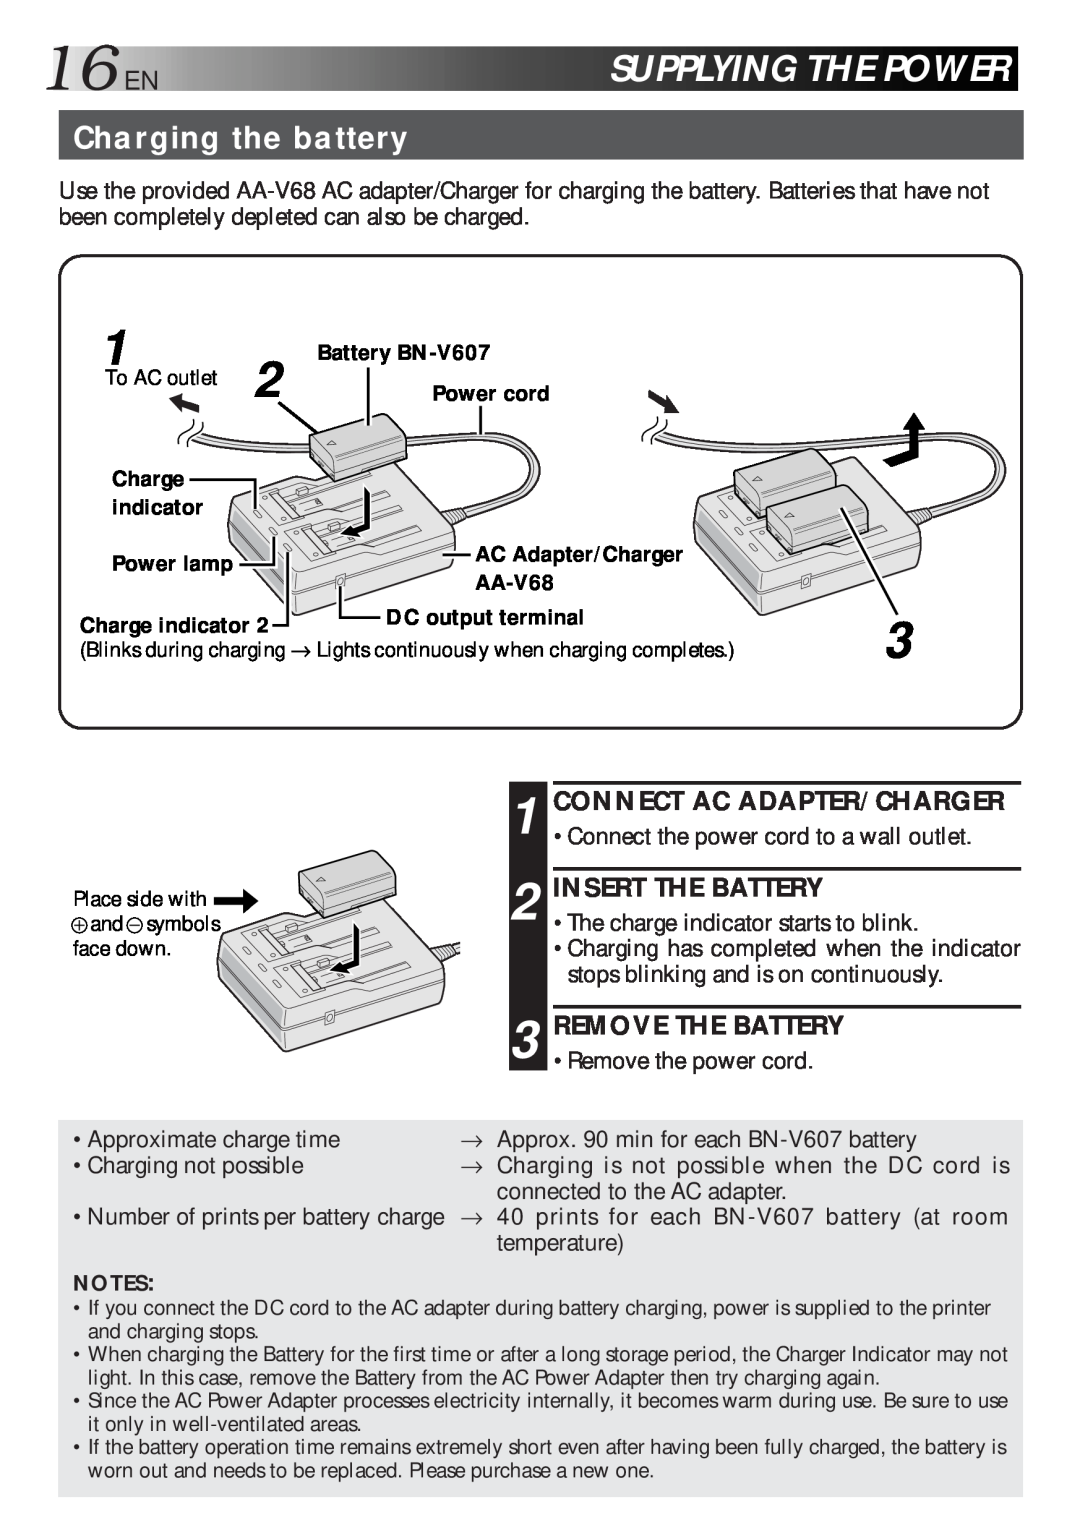 JVC GV-HT1 manual 16ENSUPPLYINGTHEPOWER, Charging the battery, Insert The Battery 